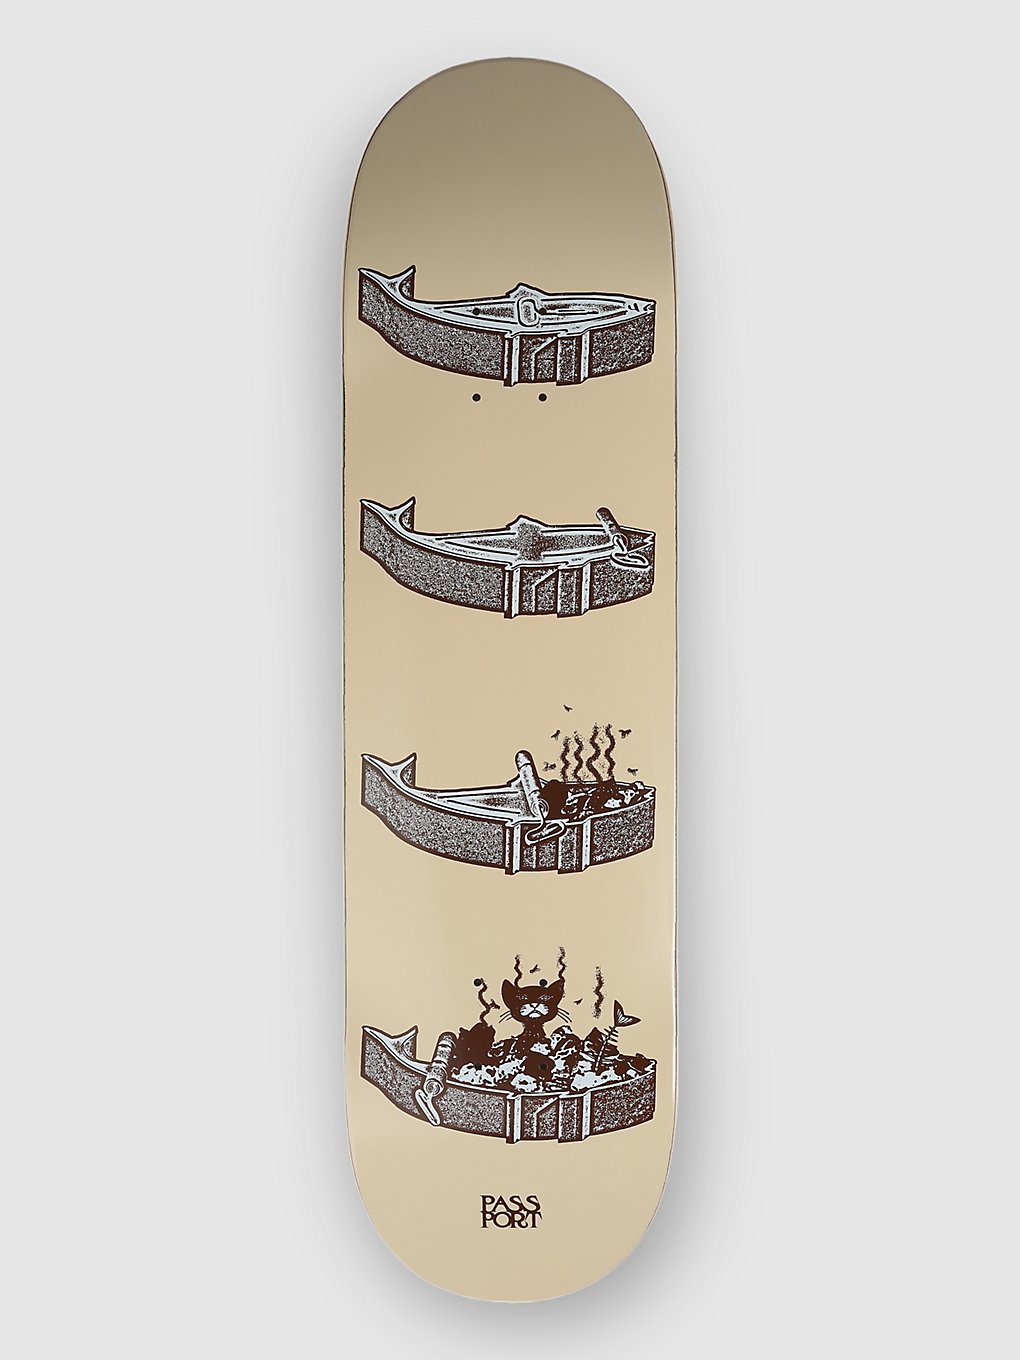 Pass Port Tinned Series Cat 8.38" Skateboard deck